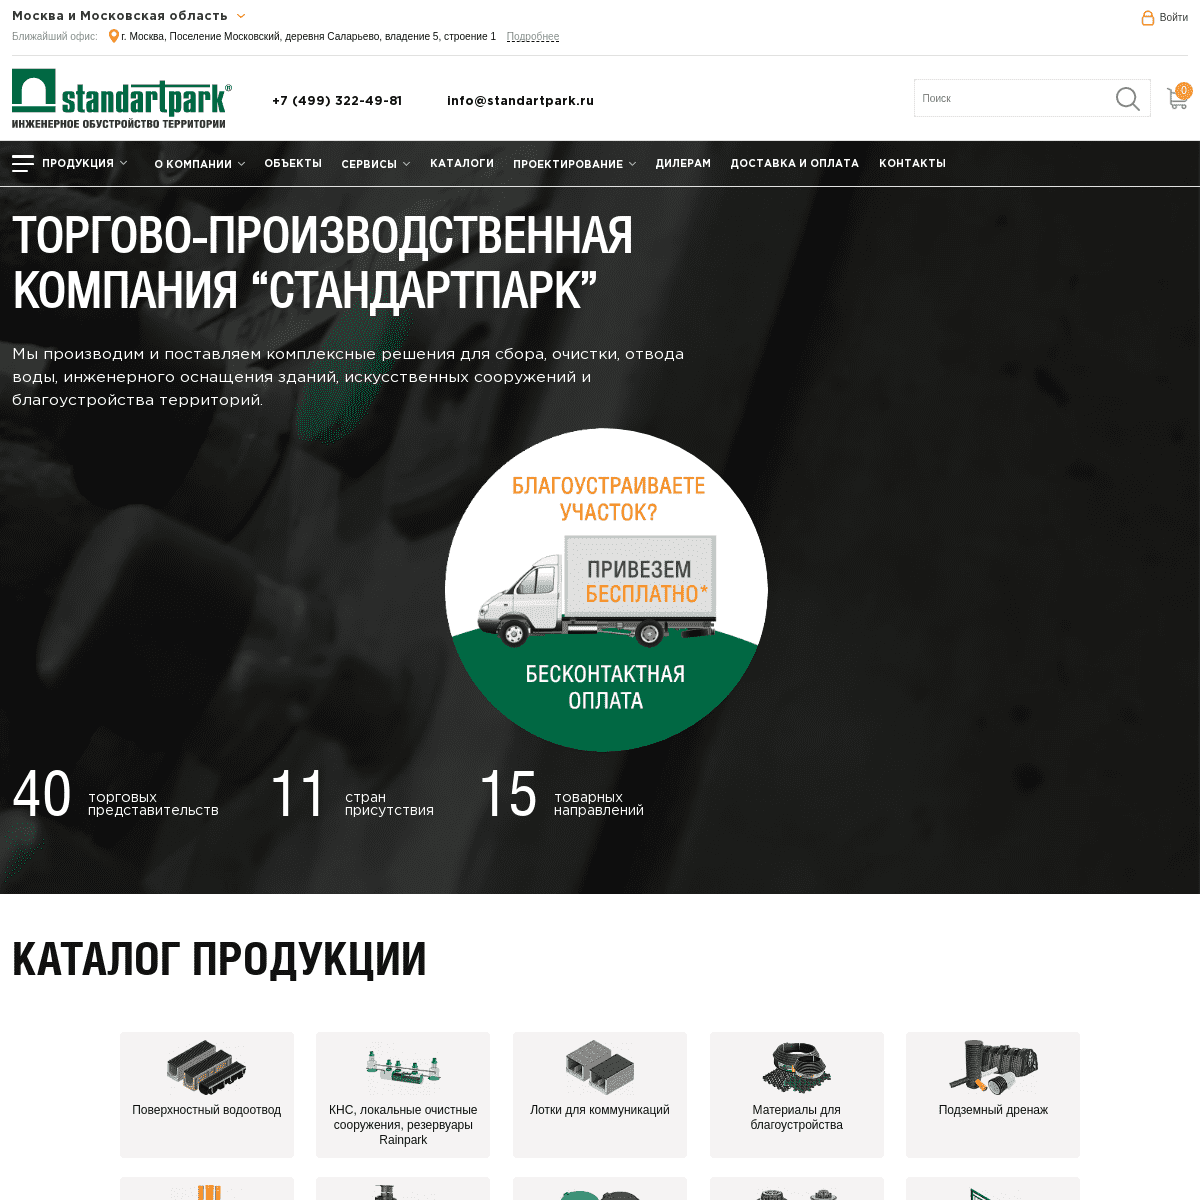 A complete backup of https://standartpark.ru